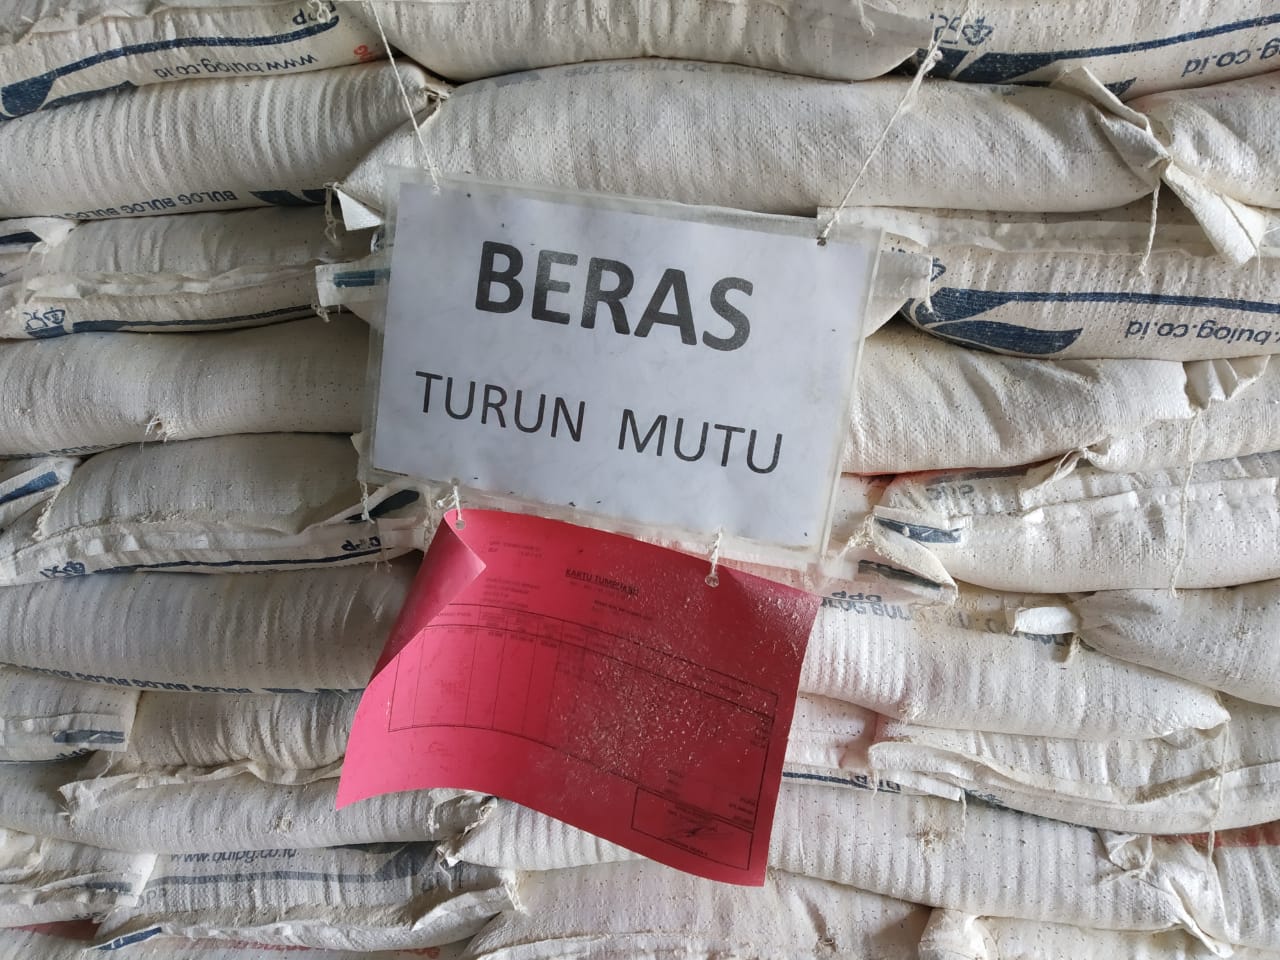 Dibeli Rp 8000 Perkilo dari Mitra, 6000 Ton Beras Bulog Rusak